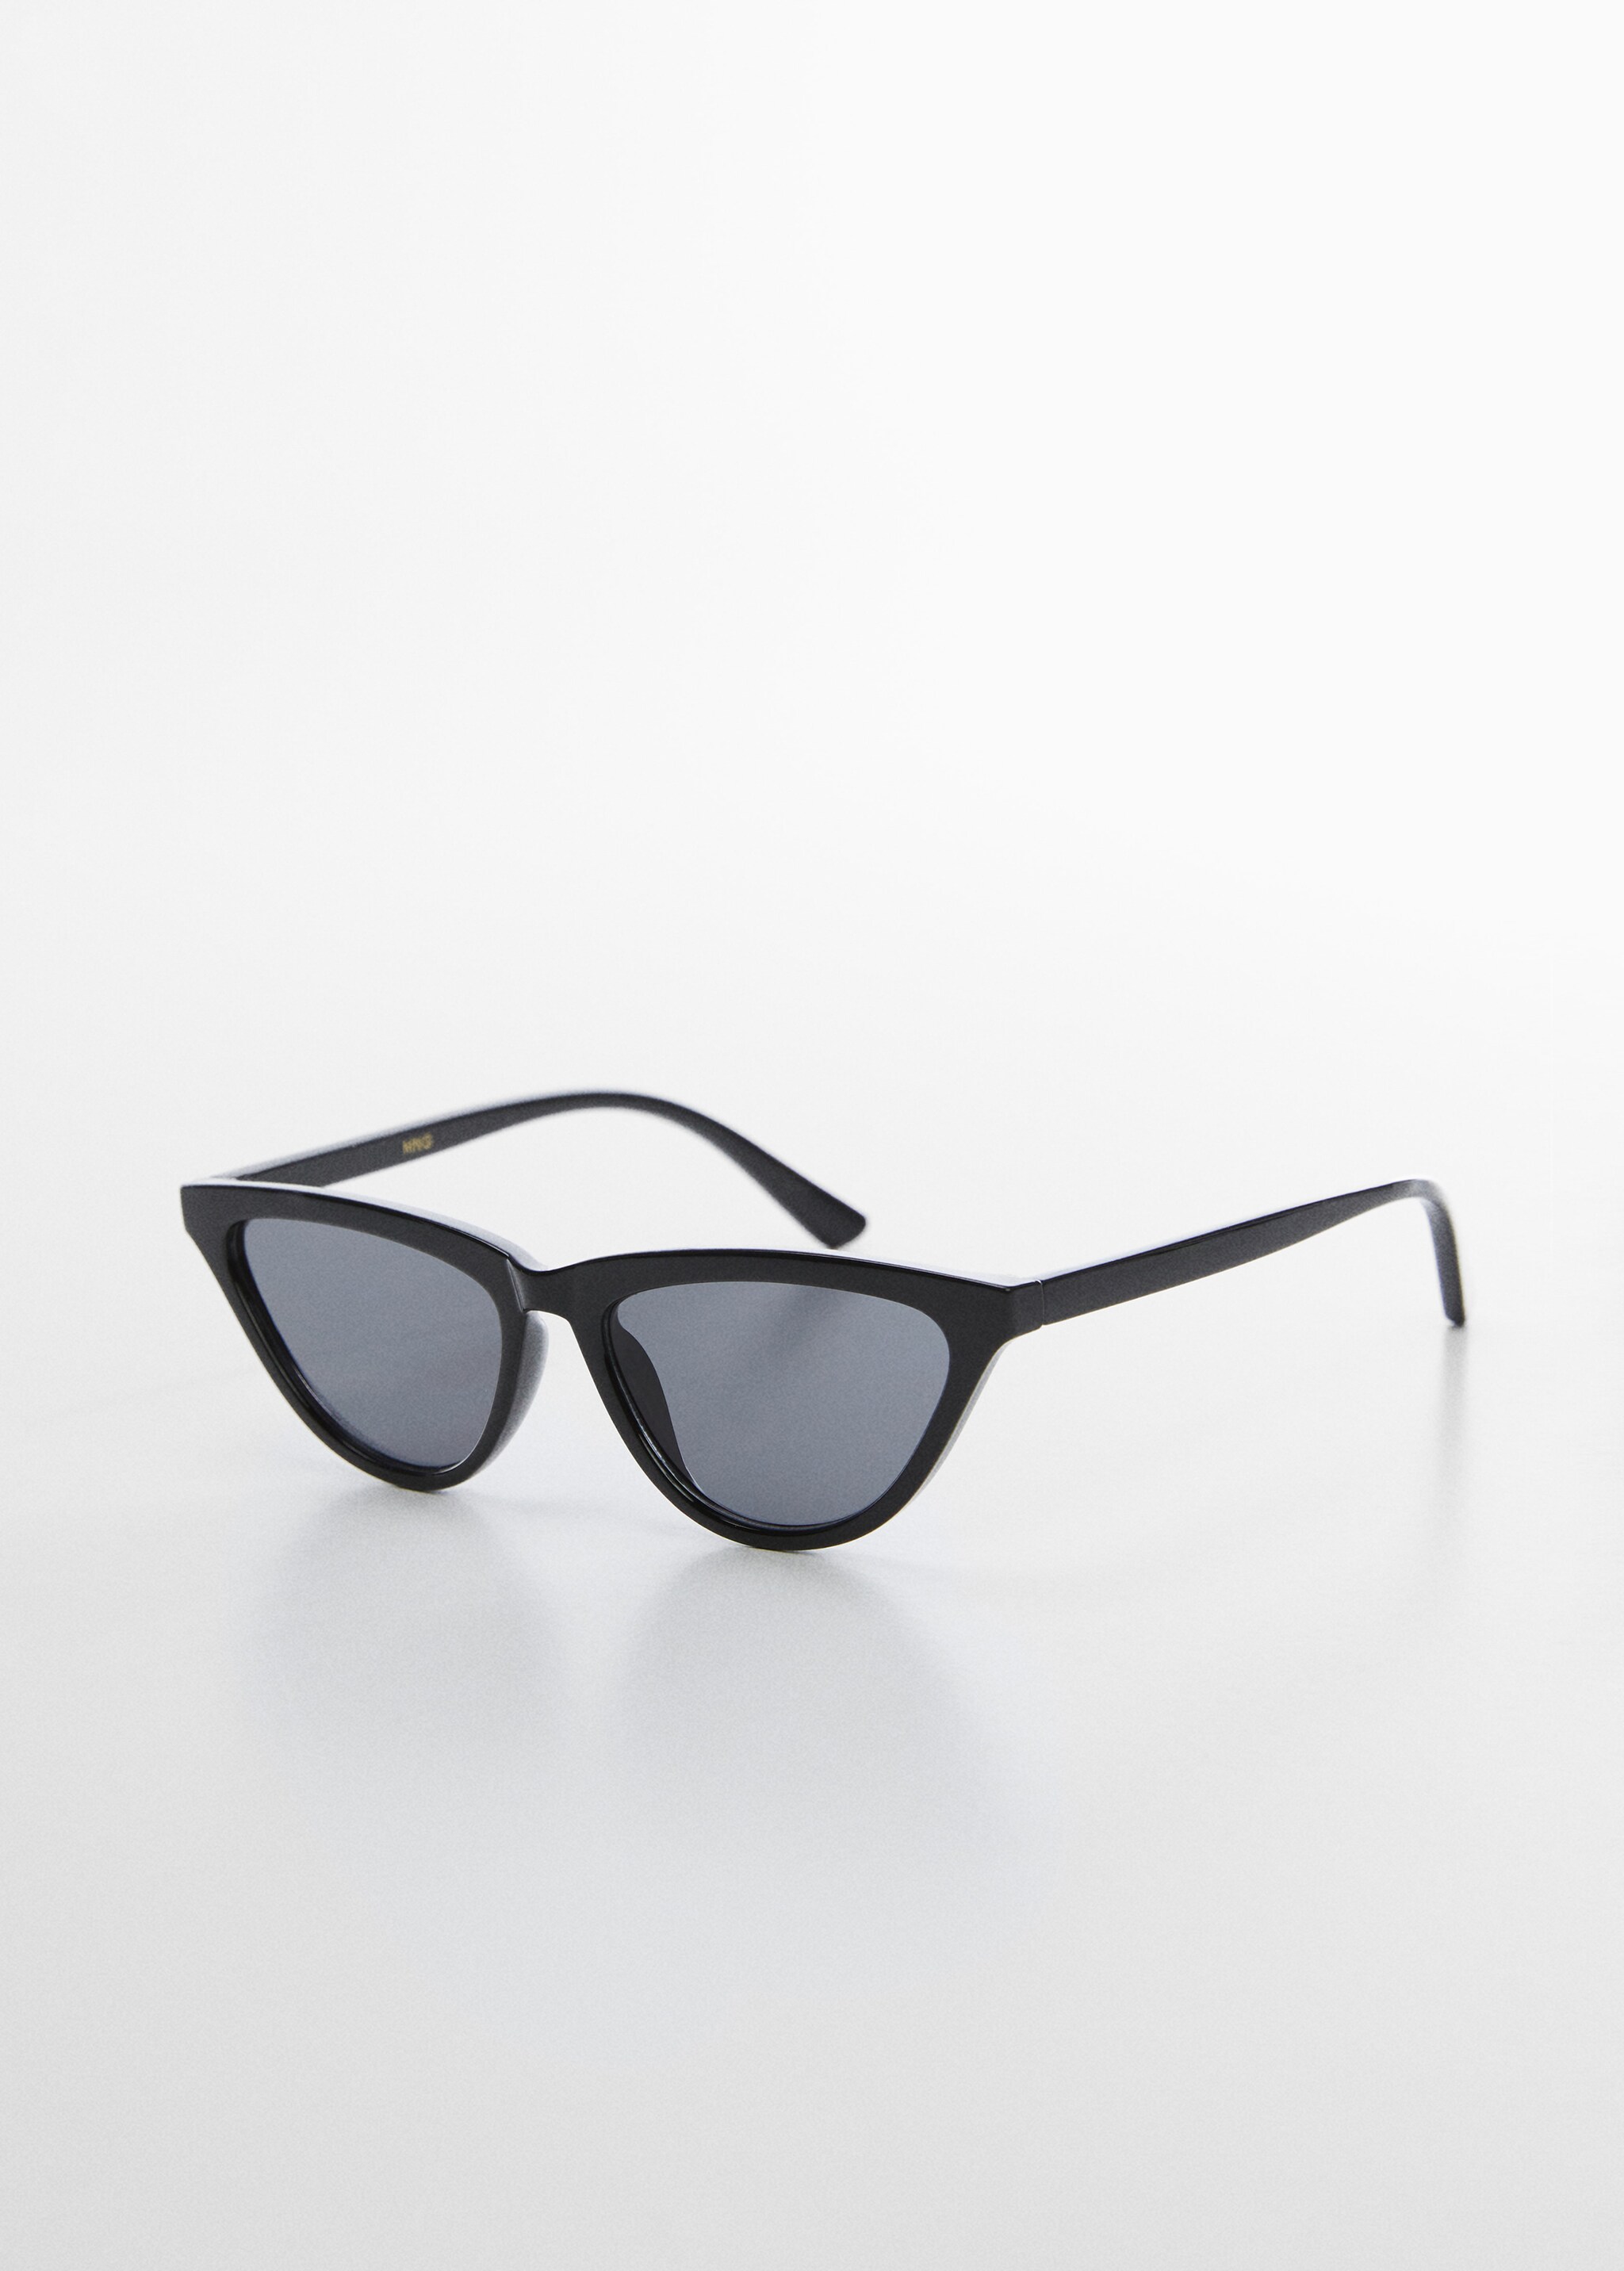 Retro style sunglasses - Medium plane